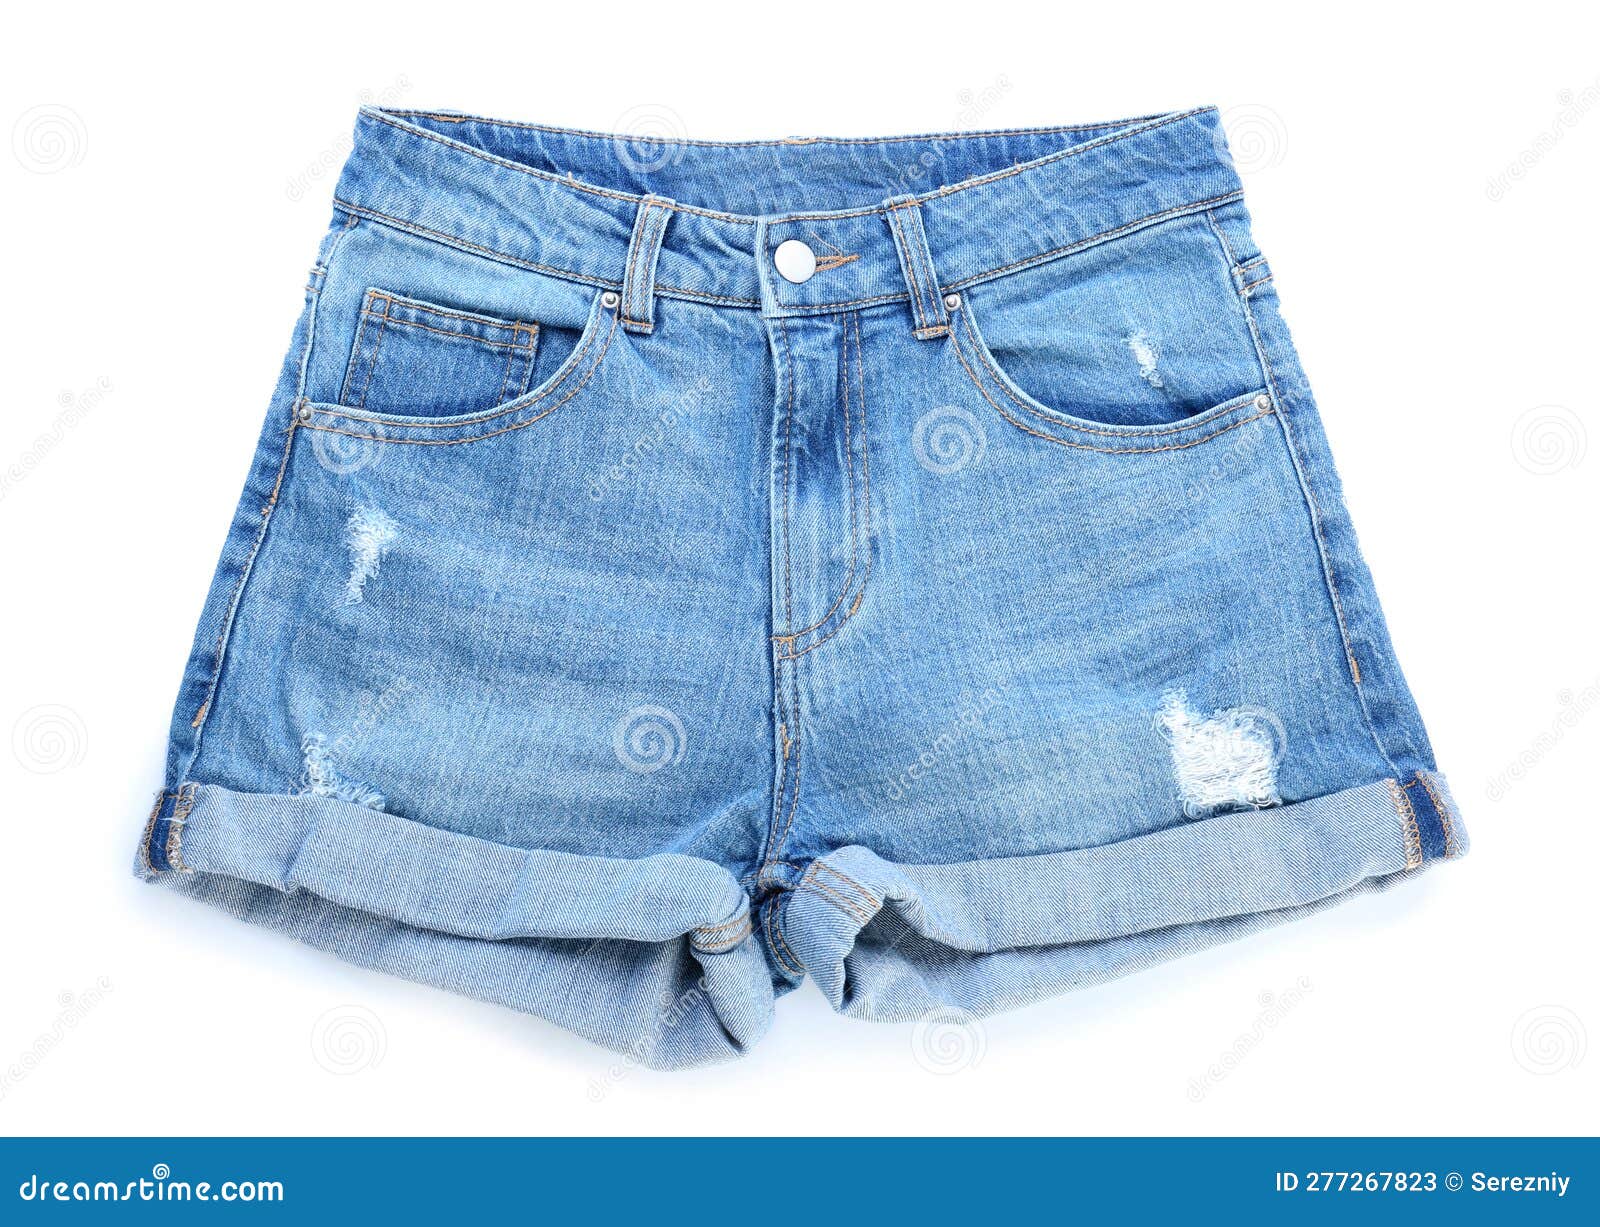 Stylish Jeans Shorts on White Background Stock Image - Image of ...